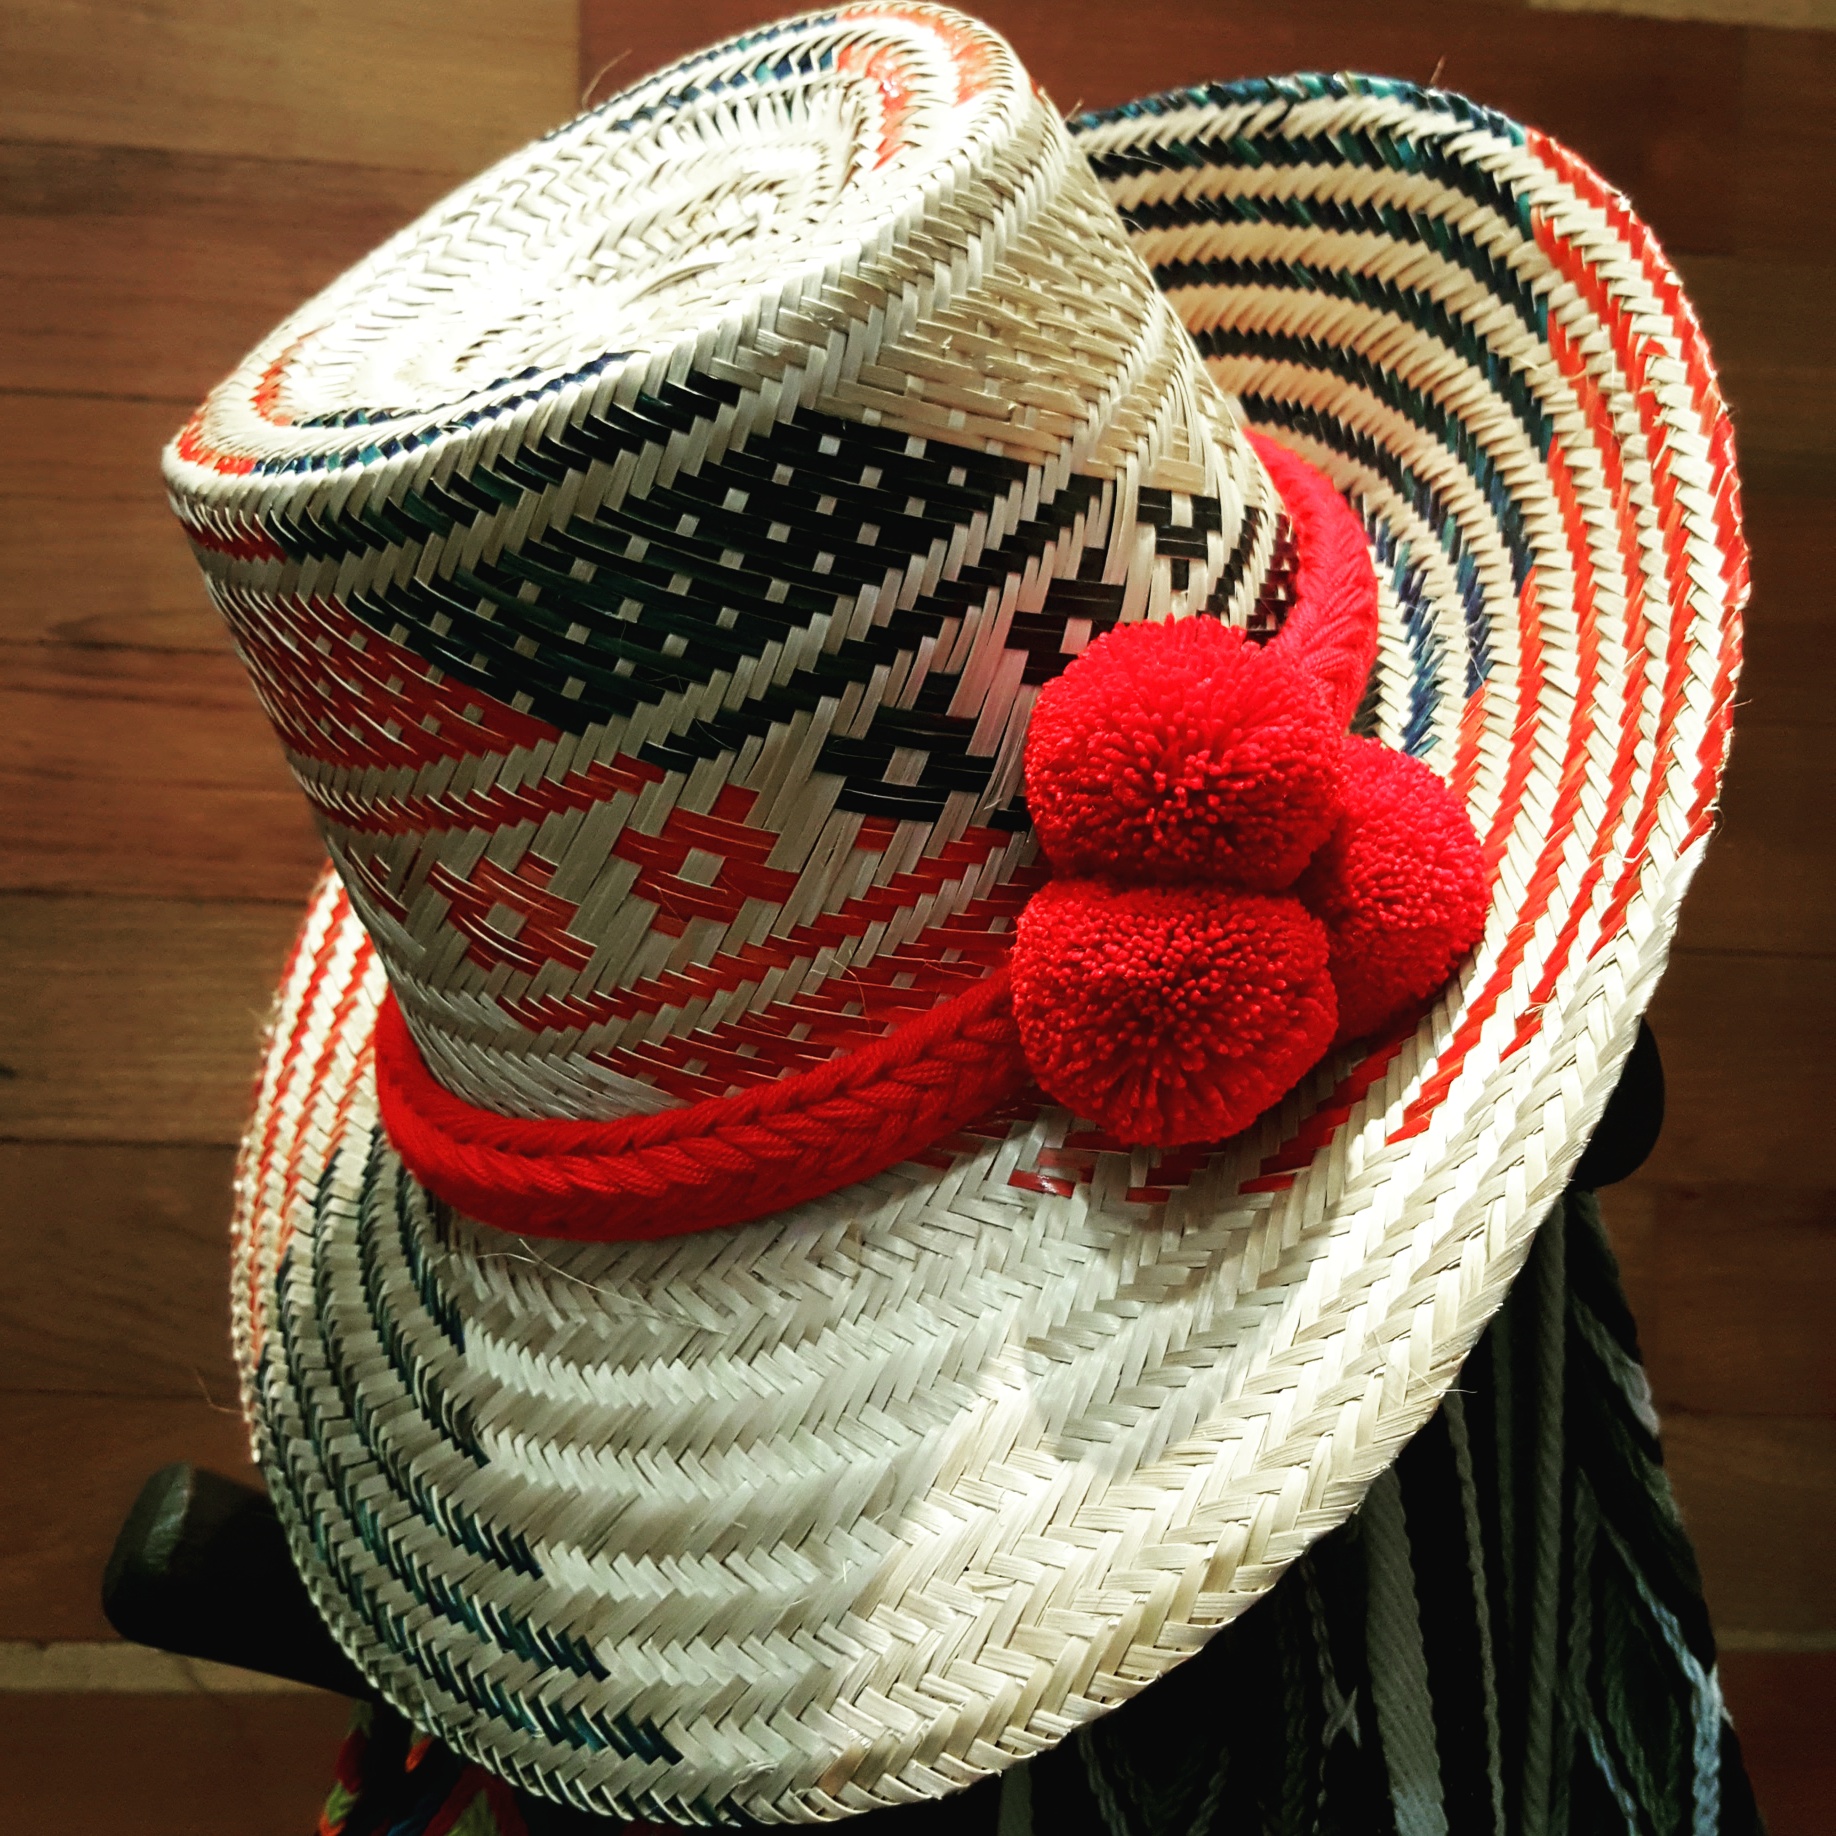 Sombreros colombianos: descubre el país a través de este típico adorno